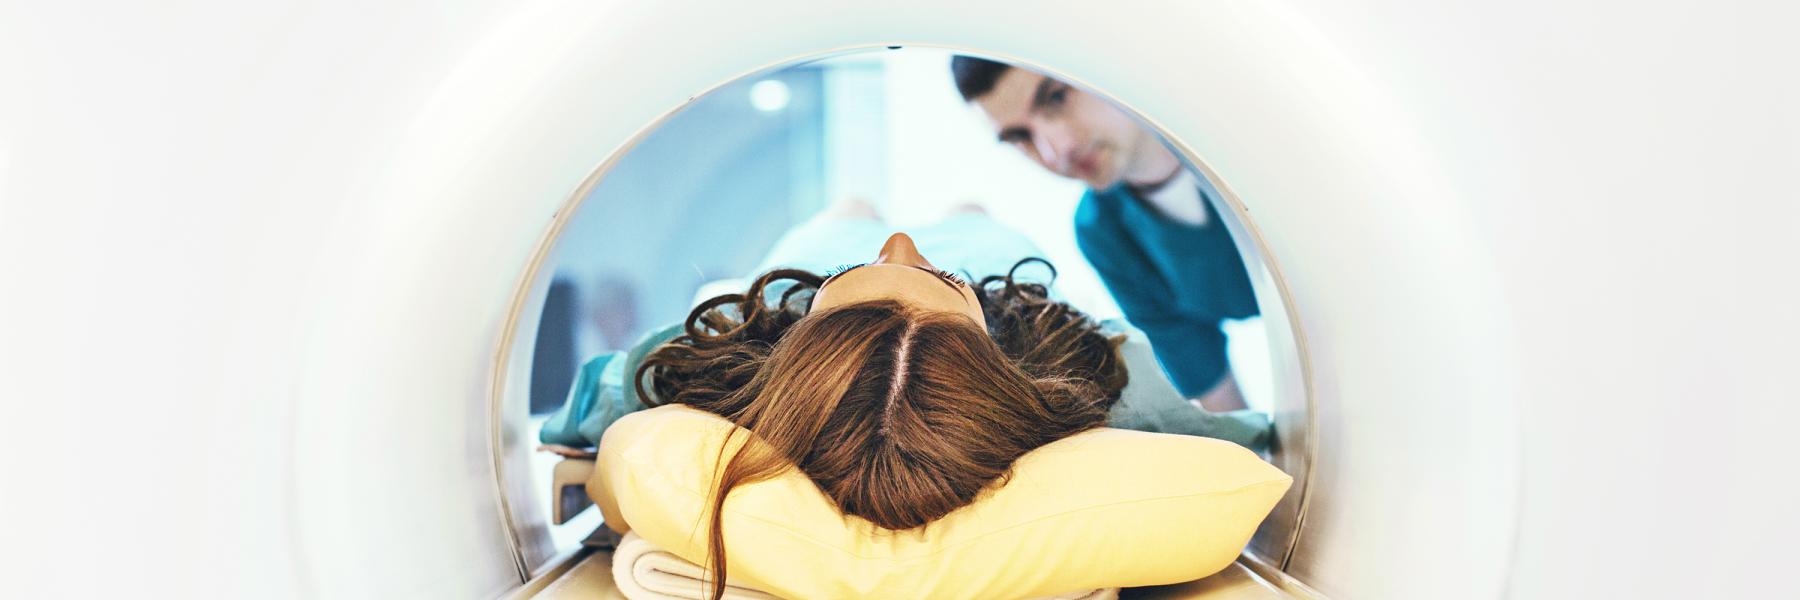 Inside MRI machine